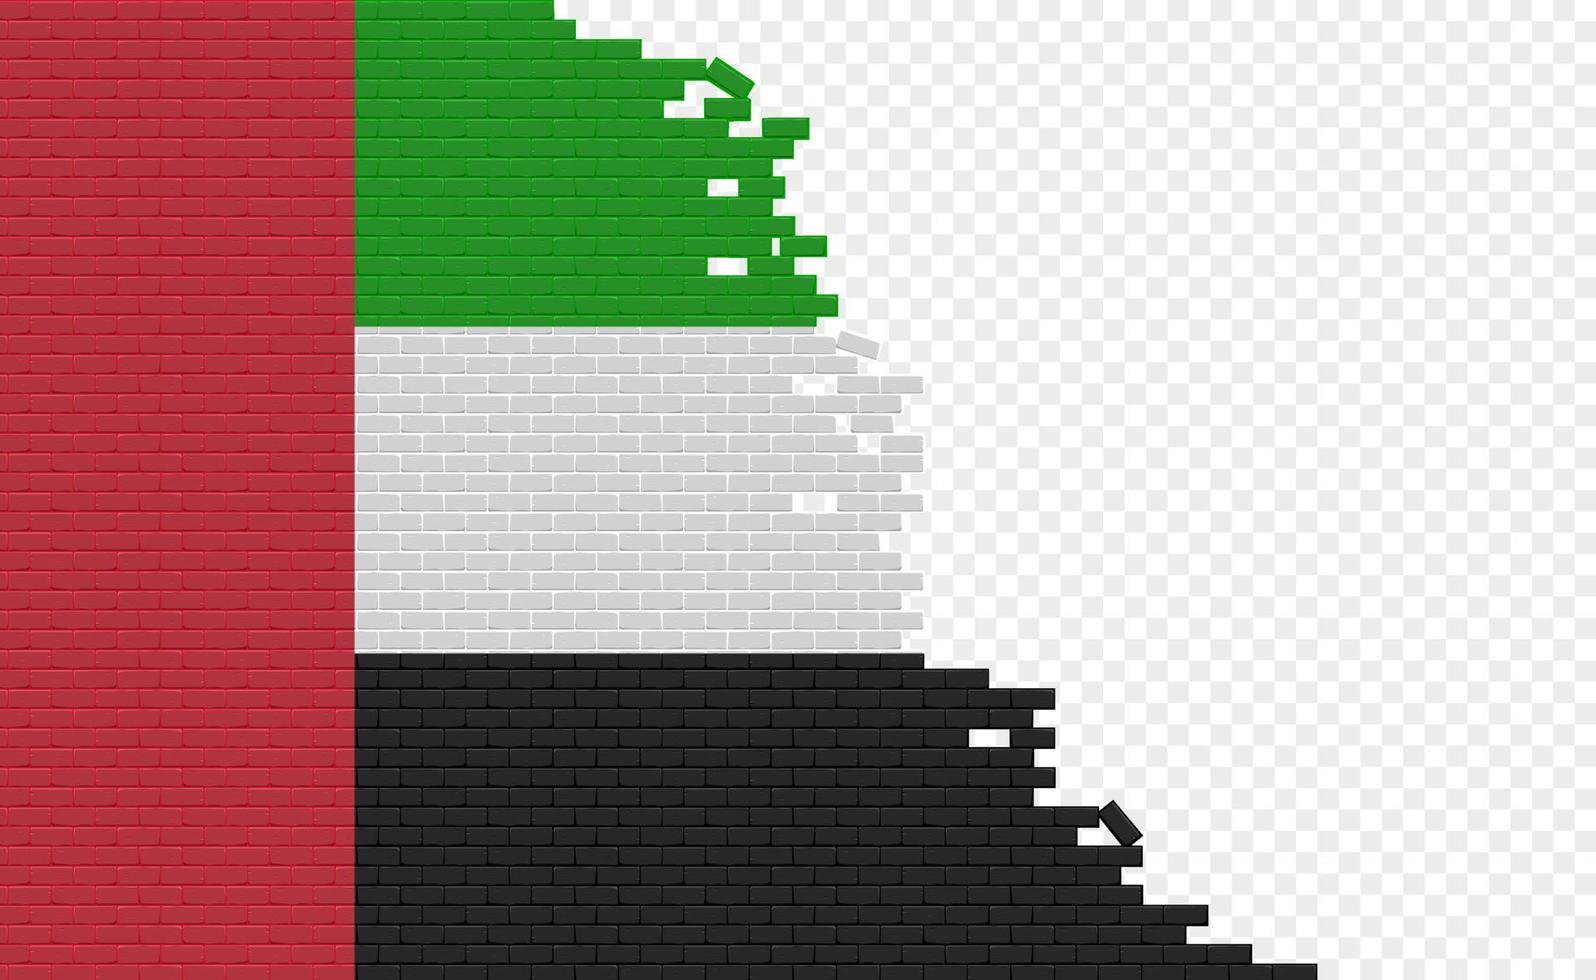 drapeau des émirats arabes unis sur le mur de briques cassées. champ de drapeau vide d'un autre pays. comparaison de pays. édition facile et vecteur en groupes.